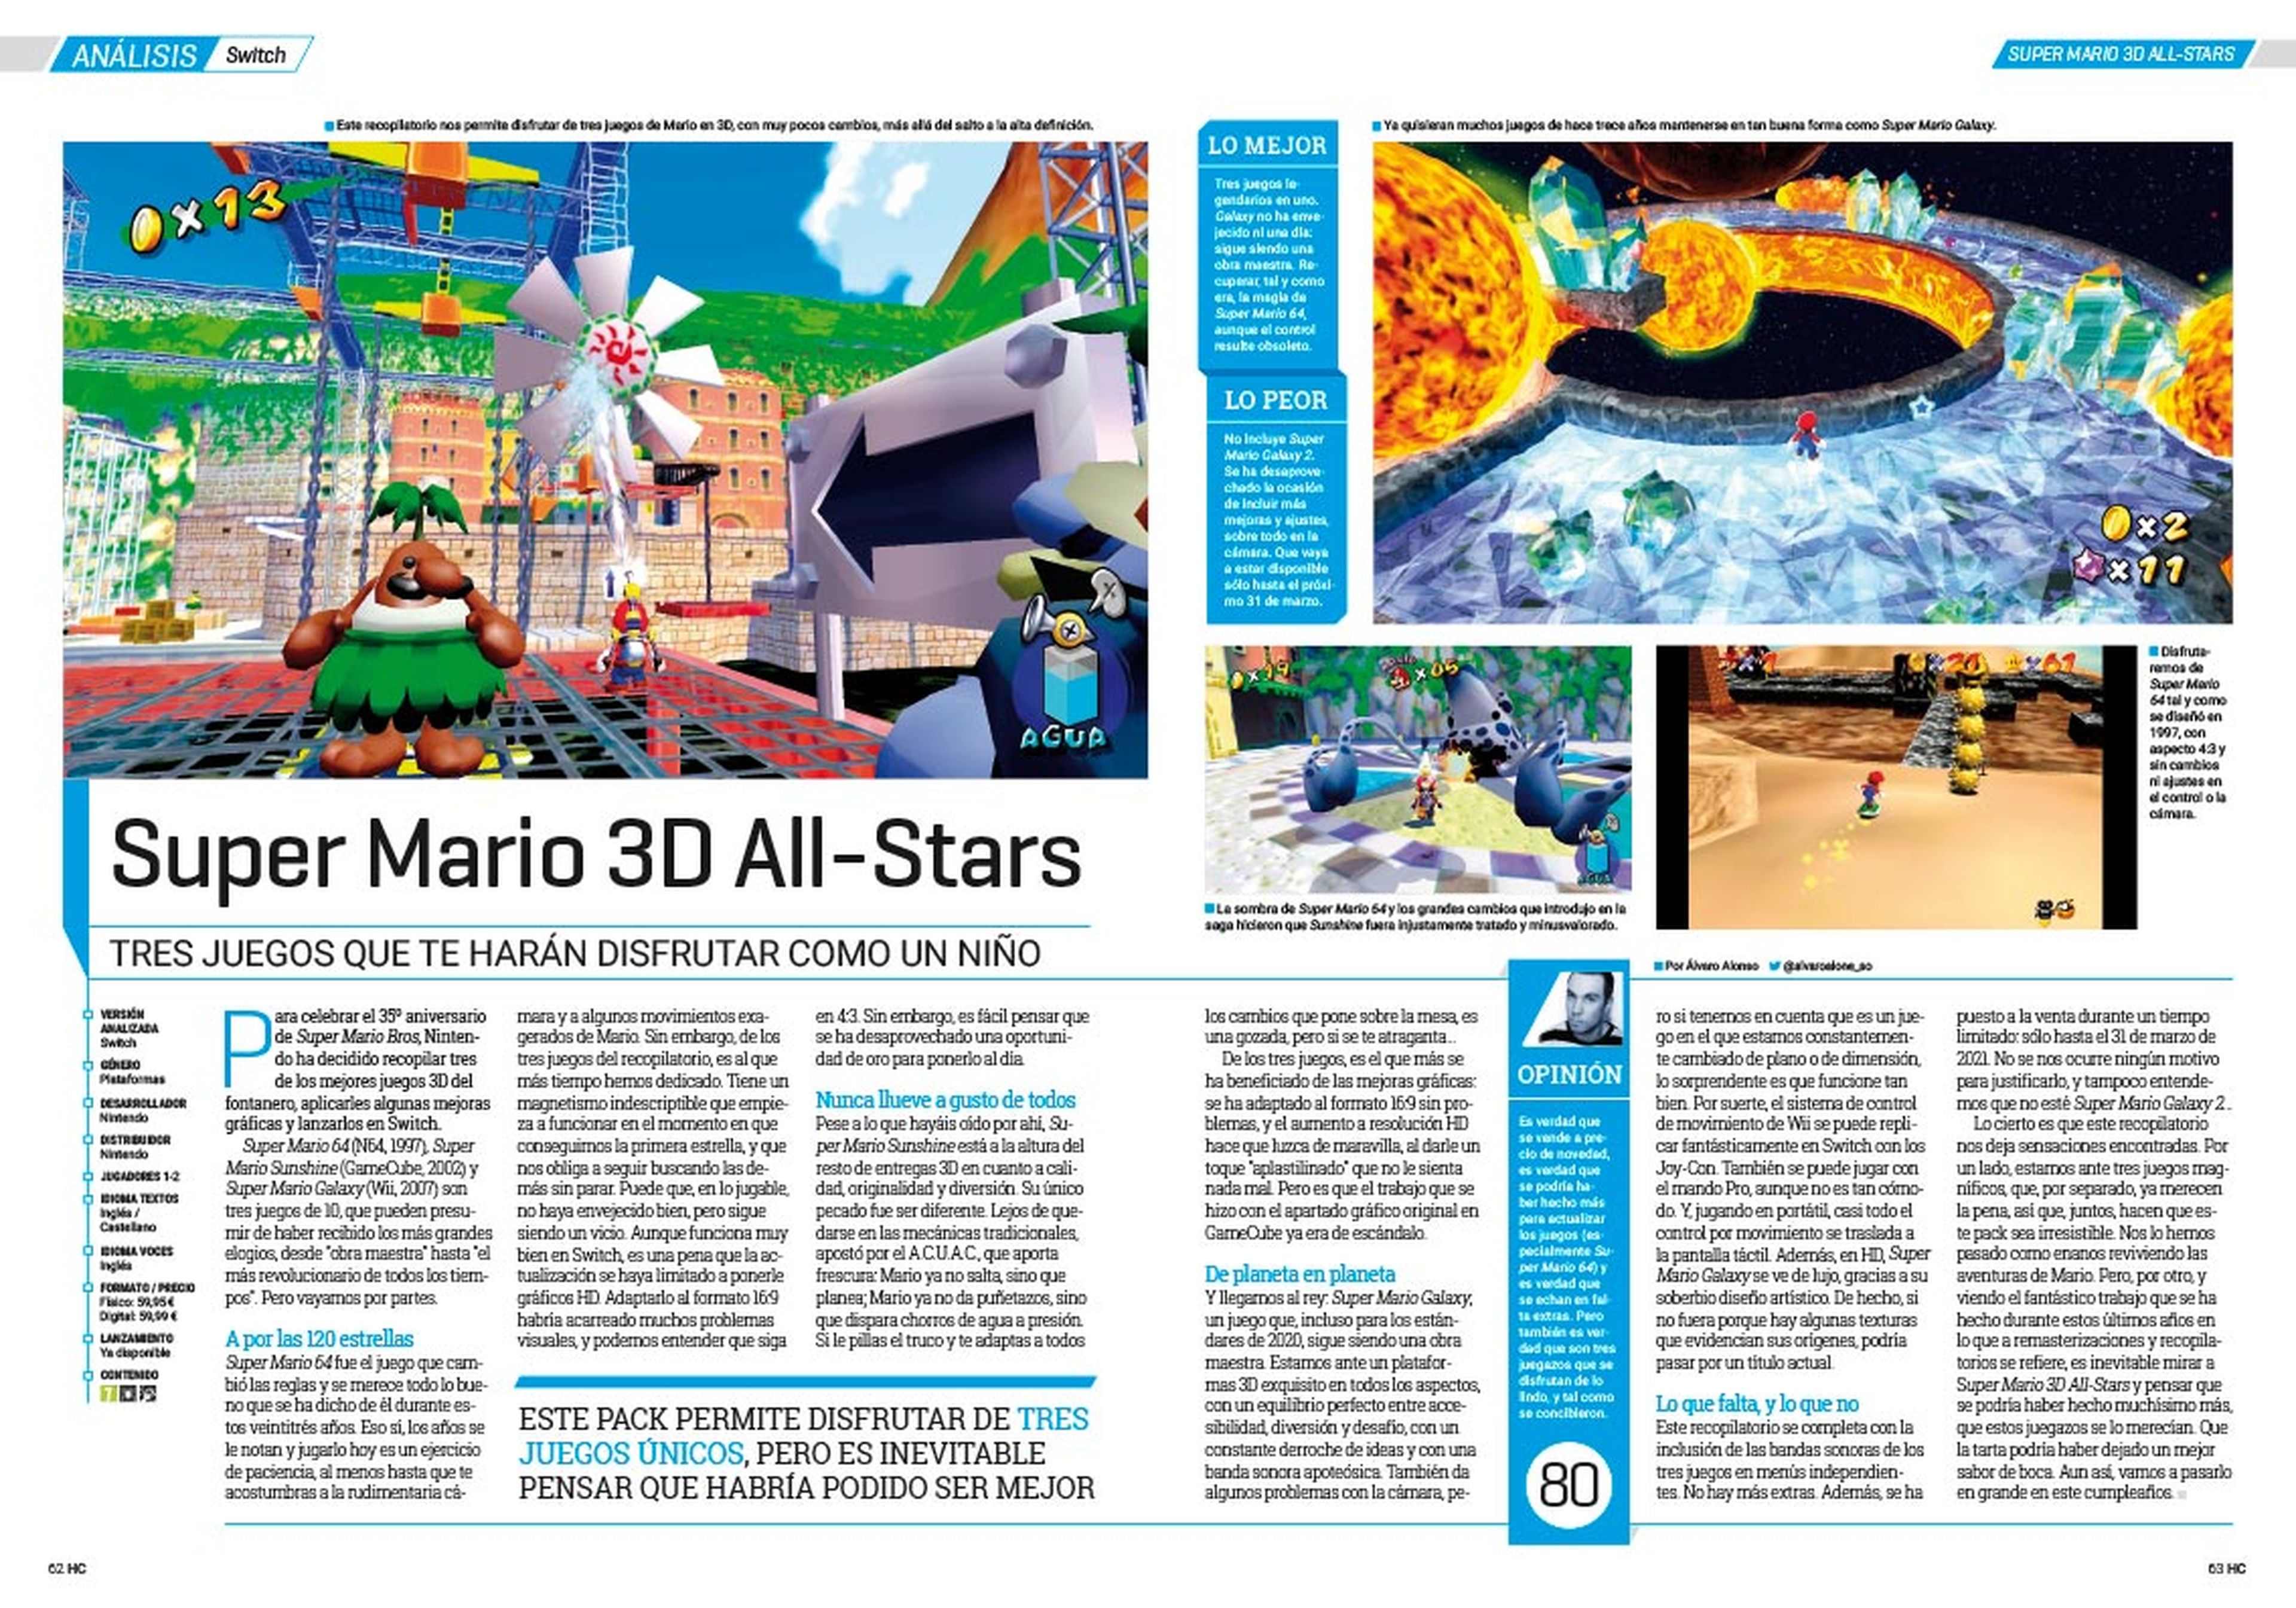 Hobby Consolas 351, a la venta con pósters de Super Mario 3D All-Stars y Call of Duty: Black Ops Cold War